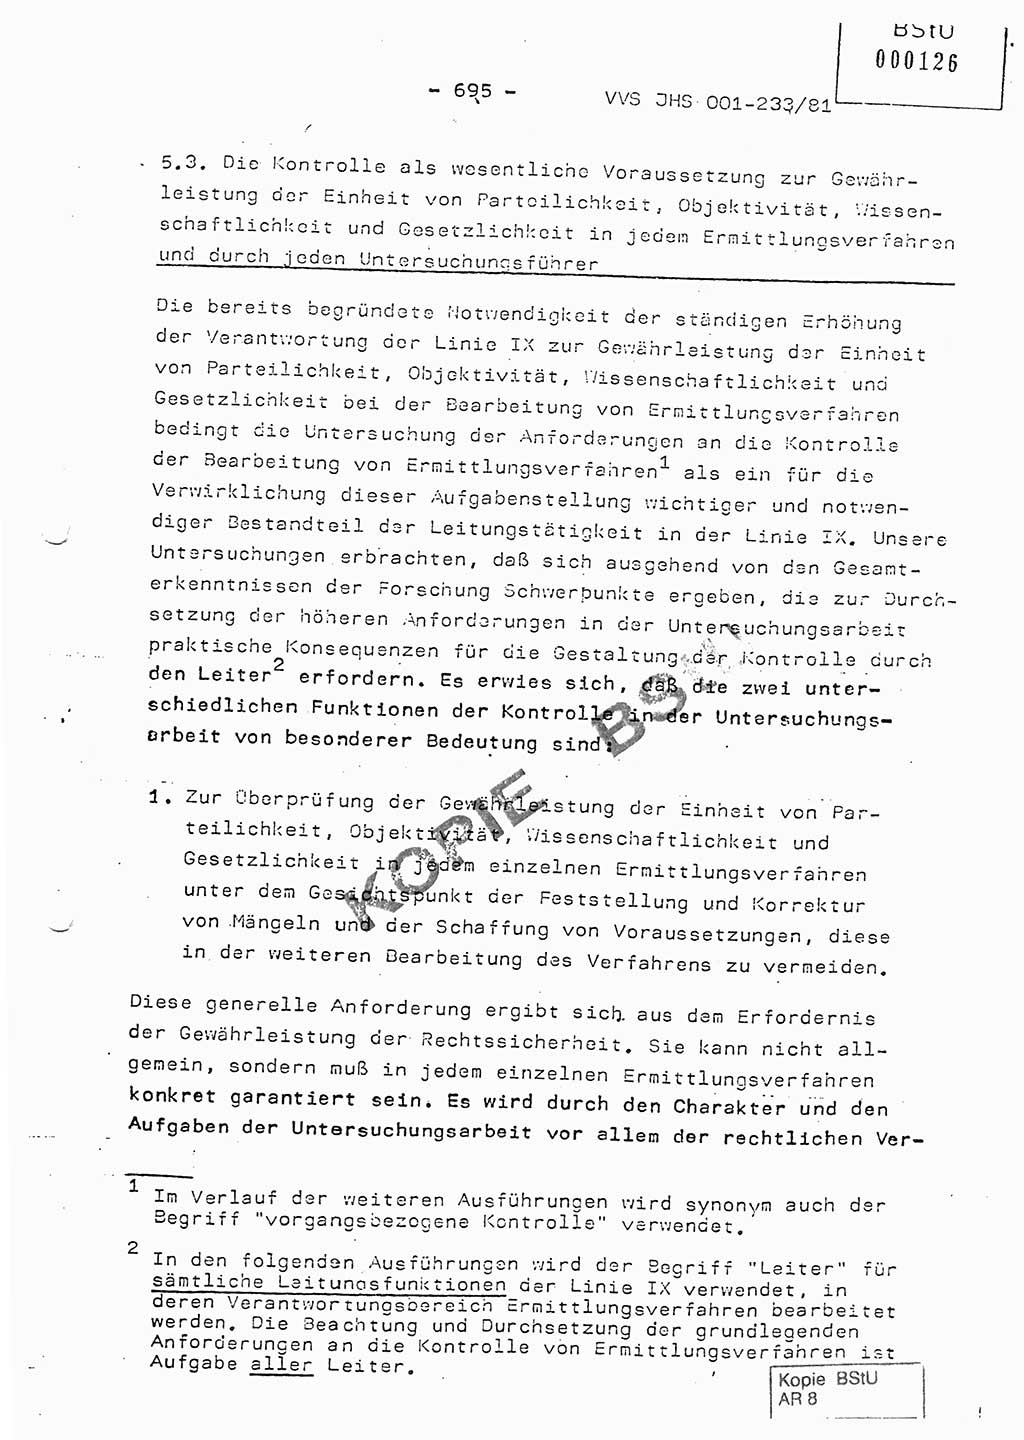 Dissertation Oberstleutnant Horst Zank (JHS), Oberstleutnant Dr. Karl-Heinz Knoblauch (JHS), Oberstleutnant Gustav-Adolf Kowalewski (HA Ⅸ), Oberstleutnant Wolfgang Plötner (HA Ⅸ), Ministerium für Staatssicherheit (MfS) [Deutsche Demokratische Republik (DDR)], Juristische Hochschule (JHS), Vertrauliche Verschlußsache (VVS) o001-233/81, Potsdam 1981, Blatt 695 (Diss. MfS DDR JHS VVS o001-233/81 1981, Bl. 695)